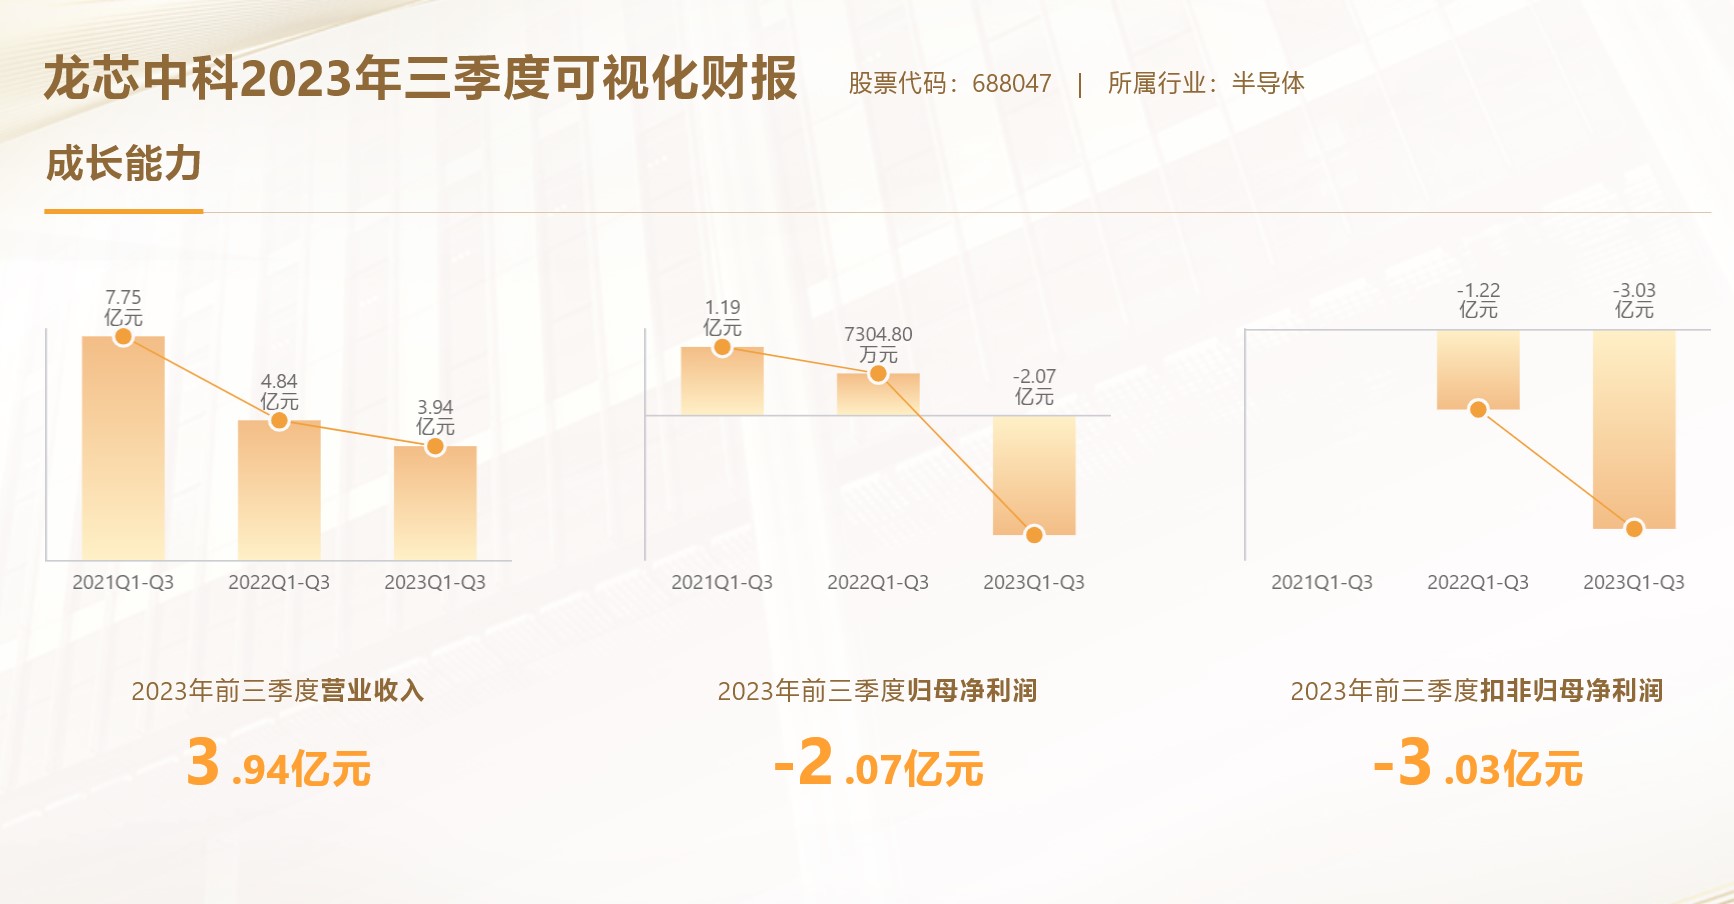 龙芯中科Q3营收超8600万元，3A6000处理器11月发布